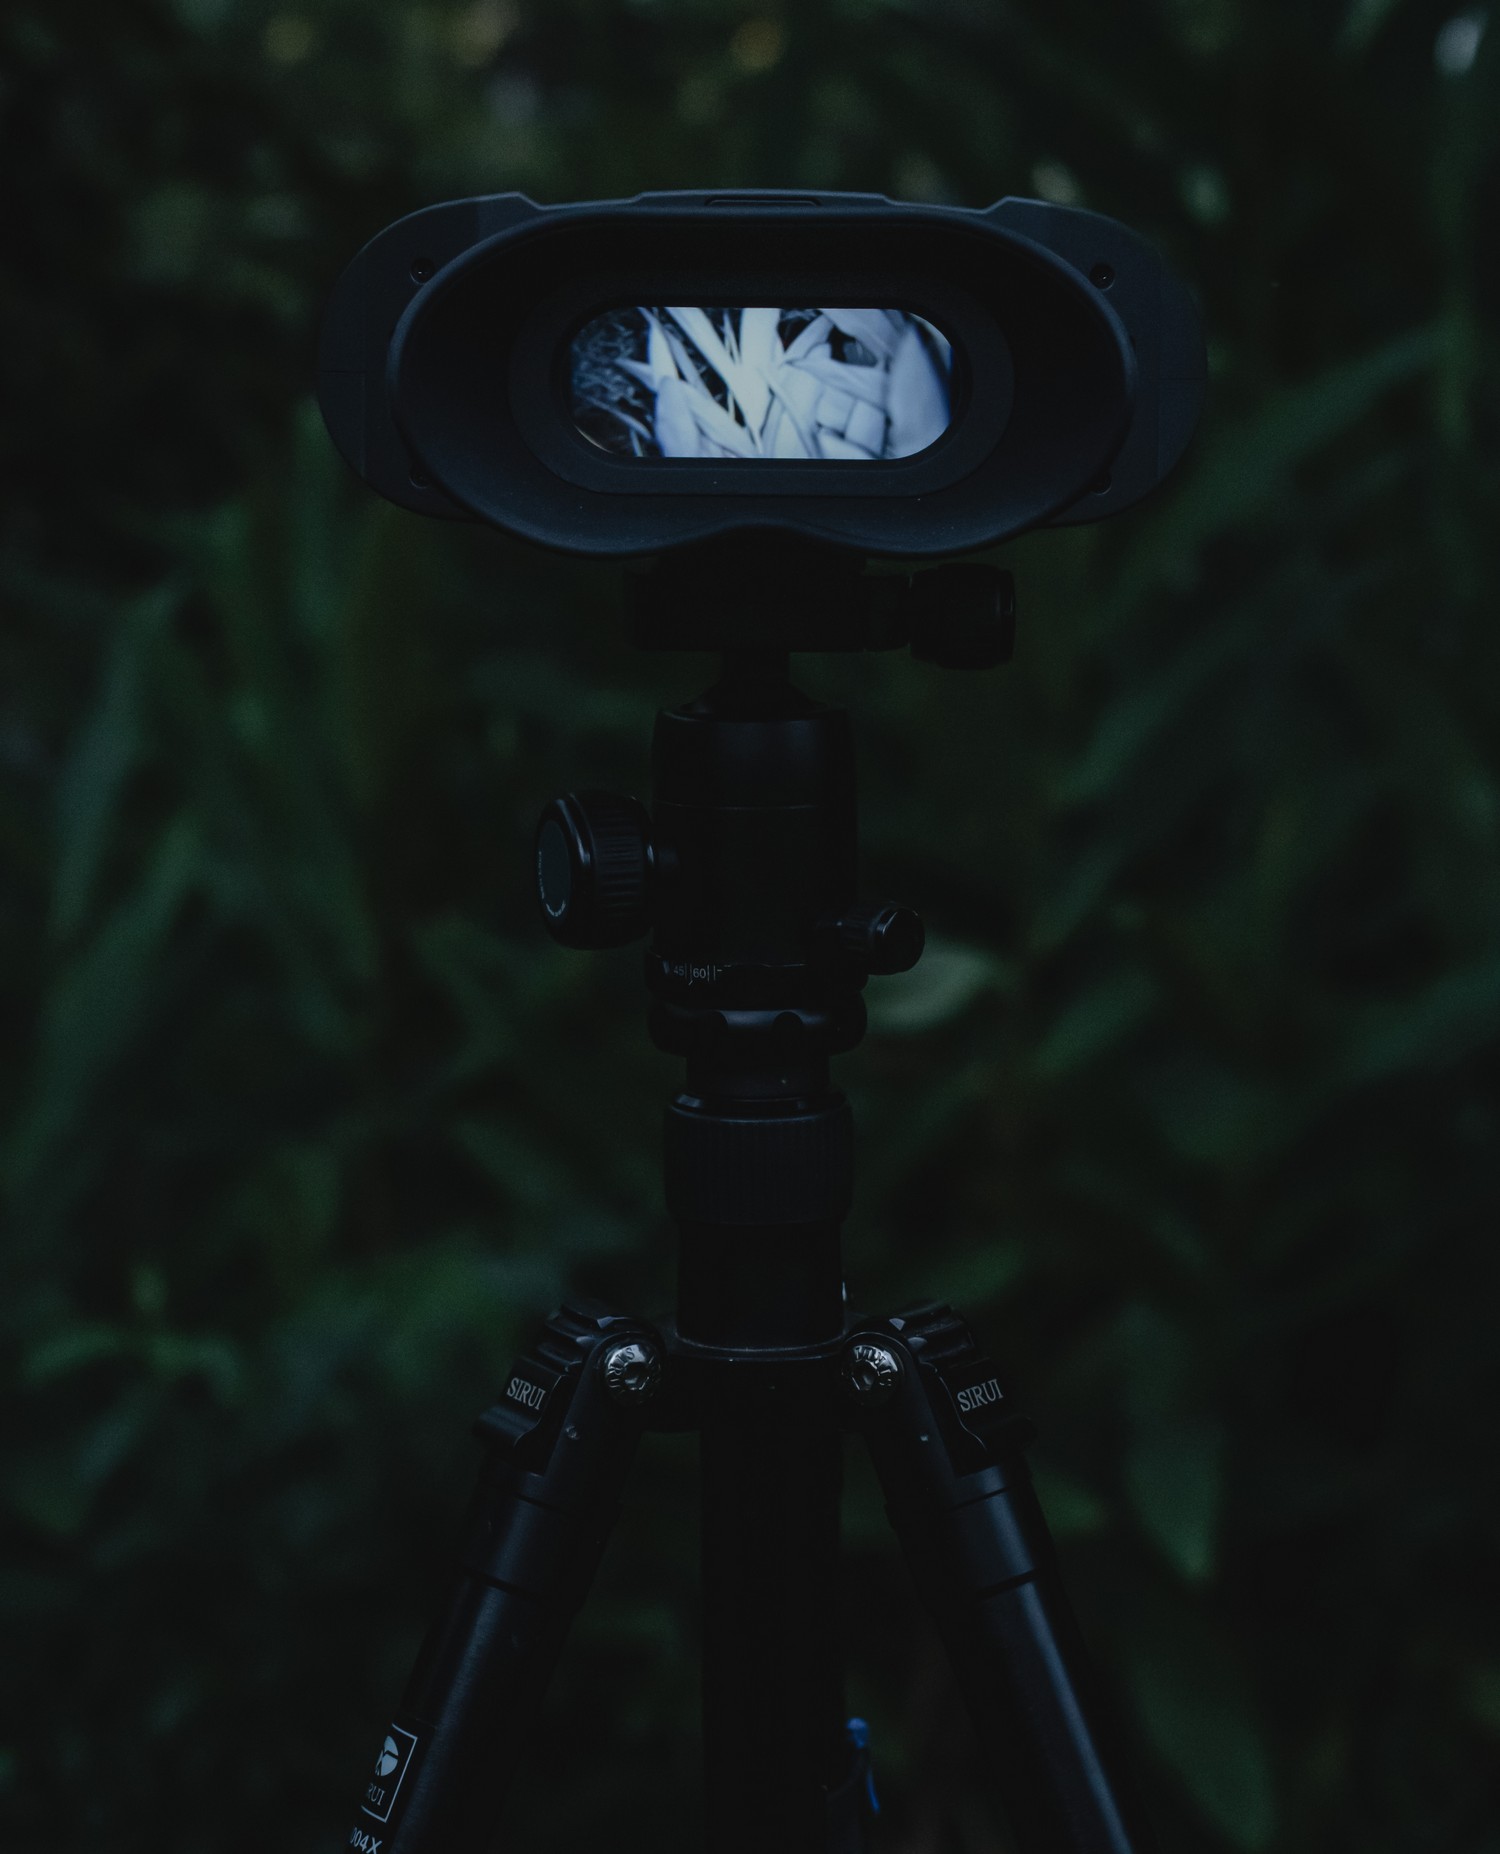 visione notturna NVB 200 - Commutazione automatica in modalità doppia giorno e notte